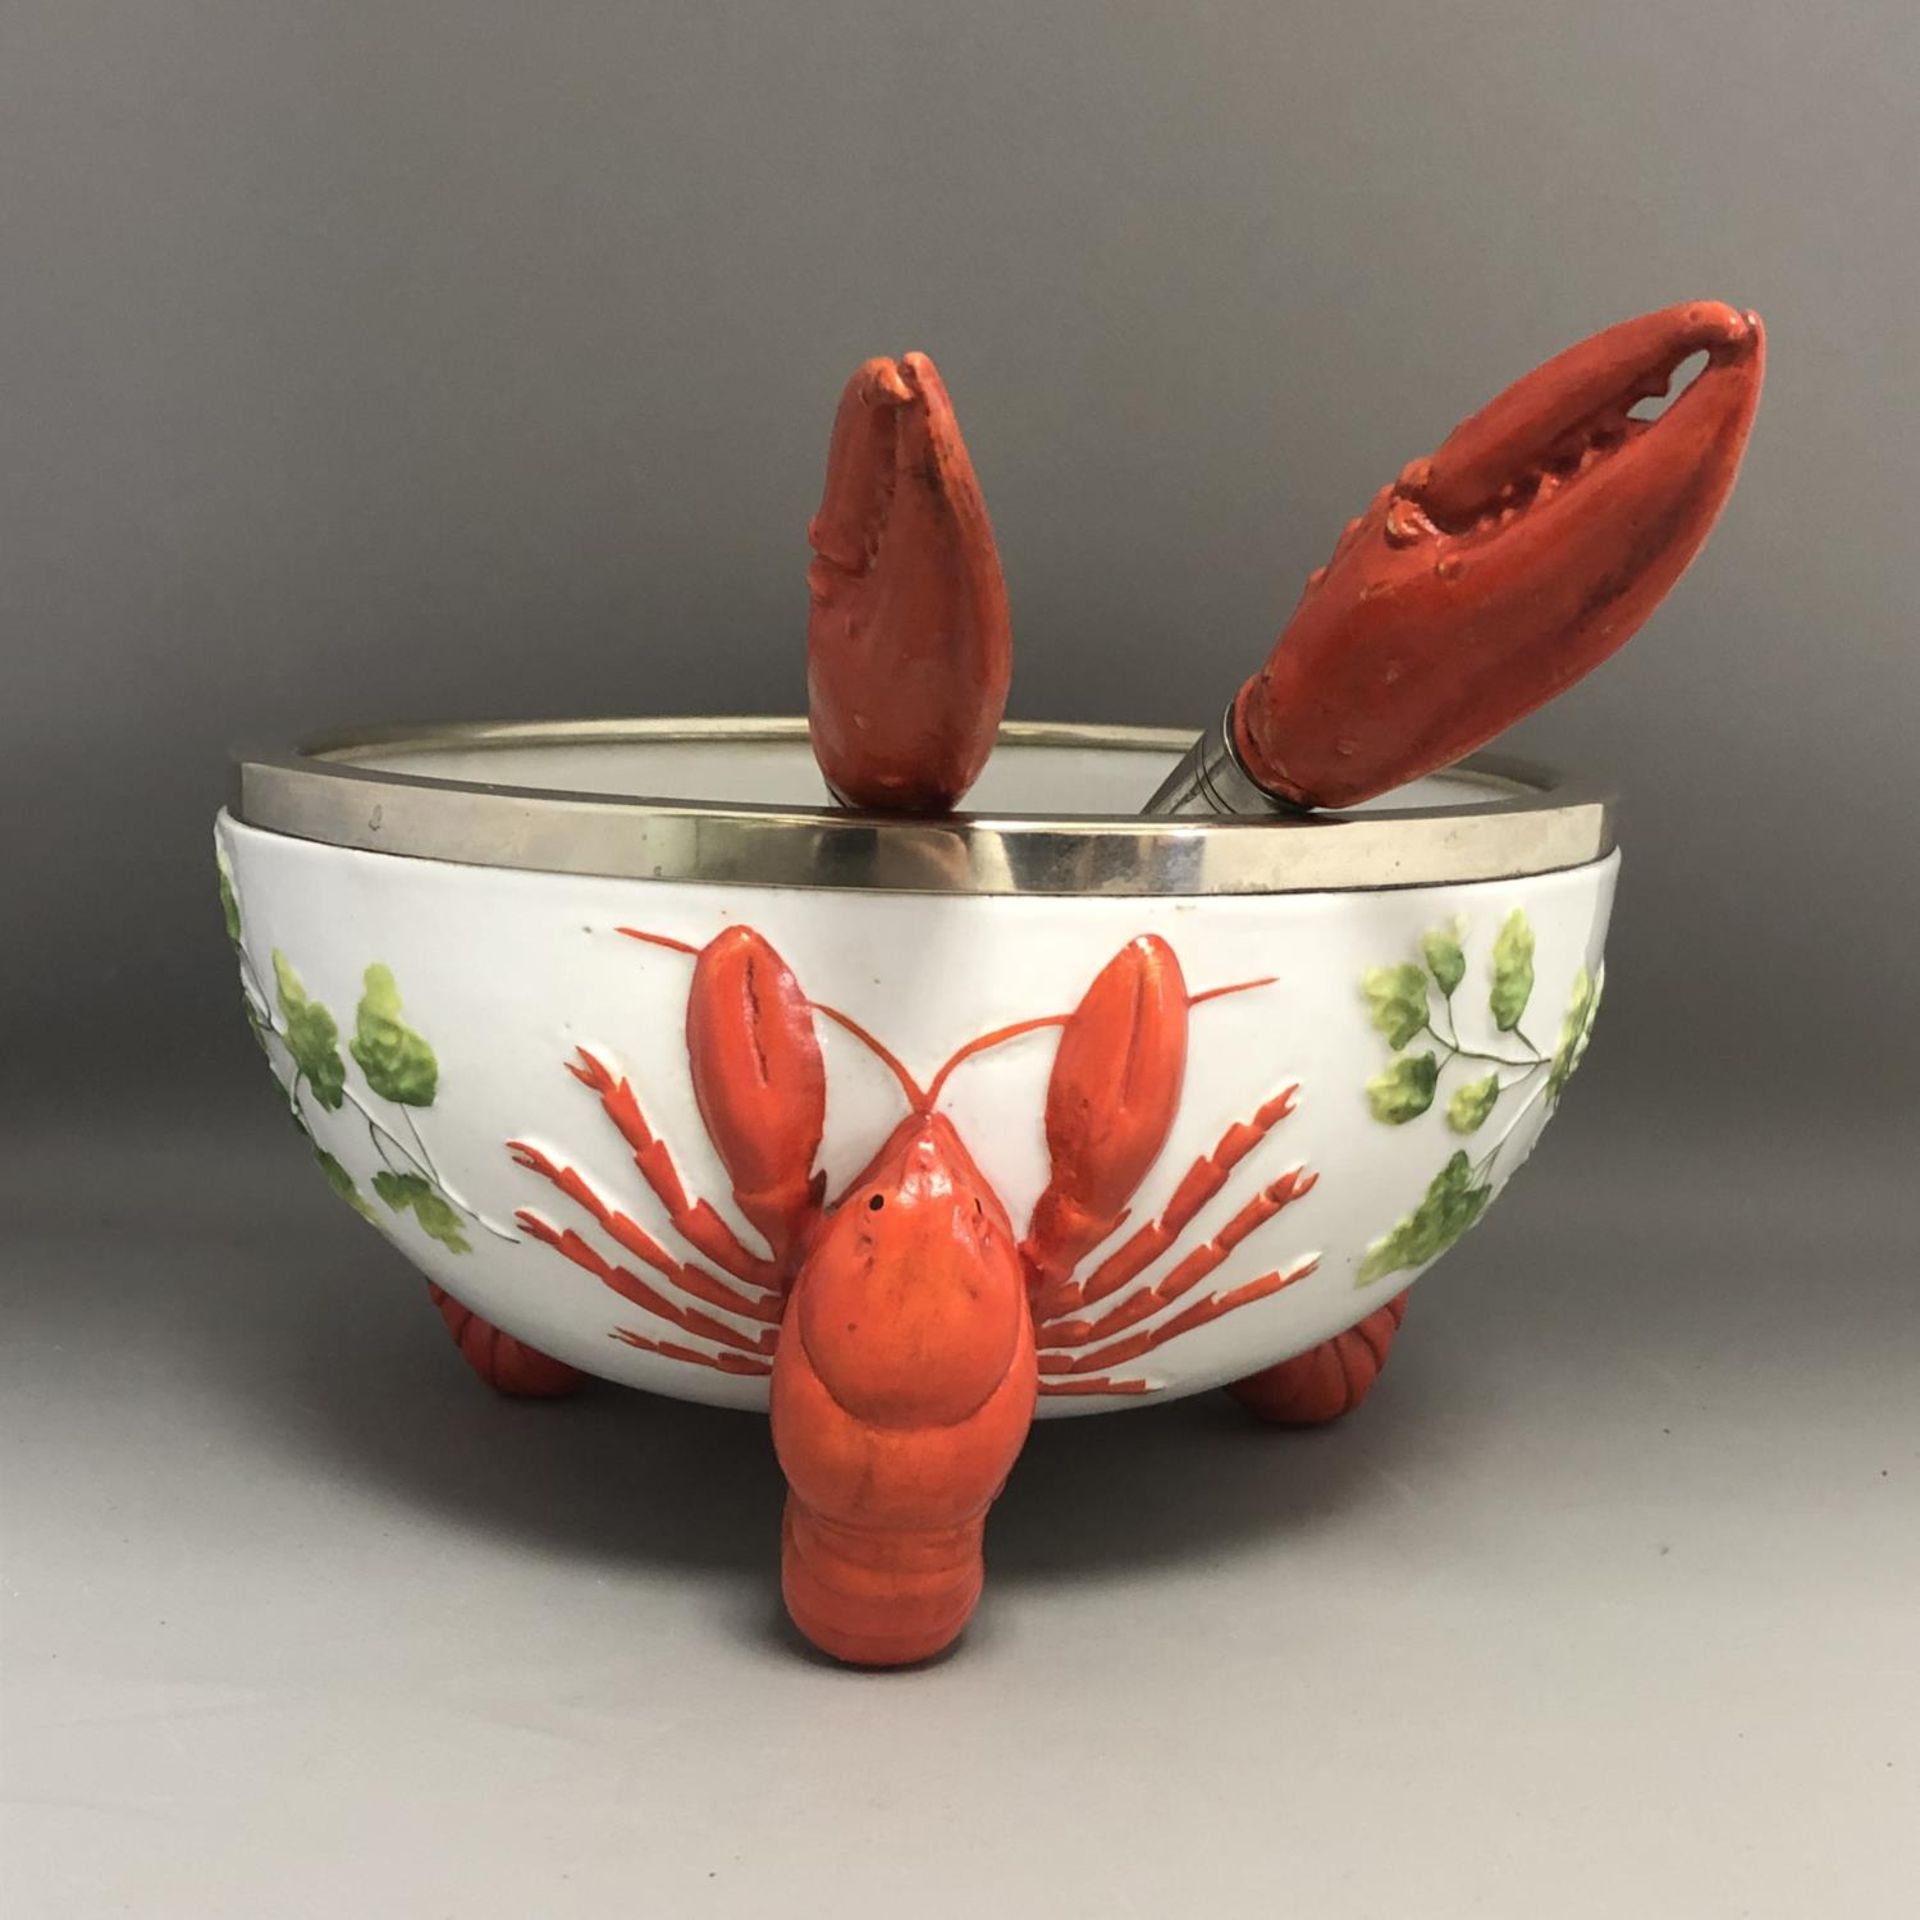 An Art Nouveau / Jugendstil WMF EPNS Rimmed Lobster Bowl with Claw Servers